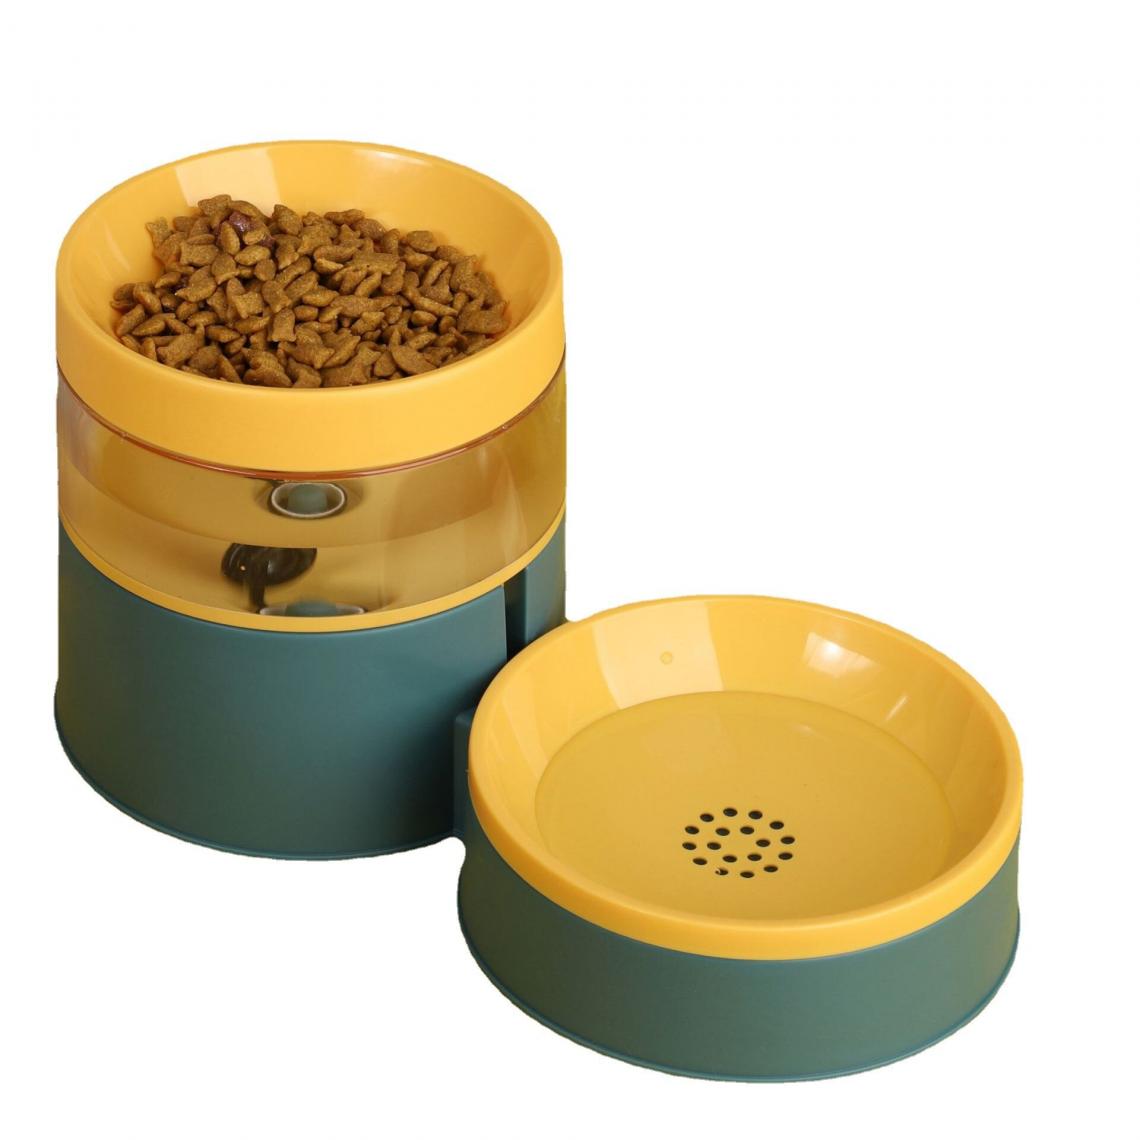 Universal - Alimentation automatique de couleur pour animaux de compagnie pour augmenter la protection du cou pour chats, eau et nourriture pour chiens, bol de nourriture pour chiens.(Jaune) - Gamelle pour chien